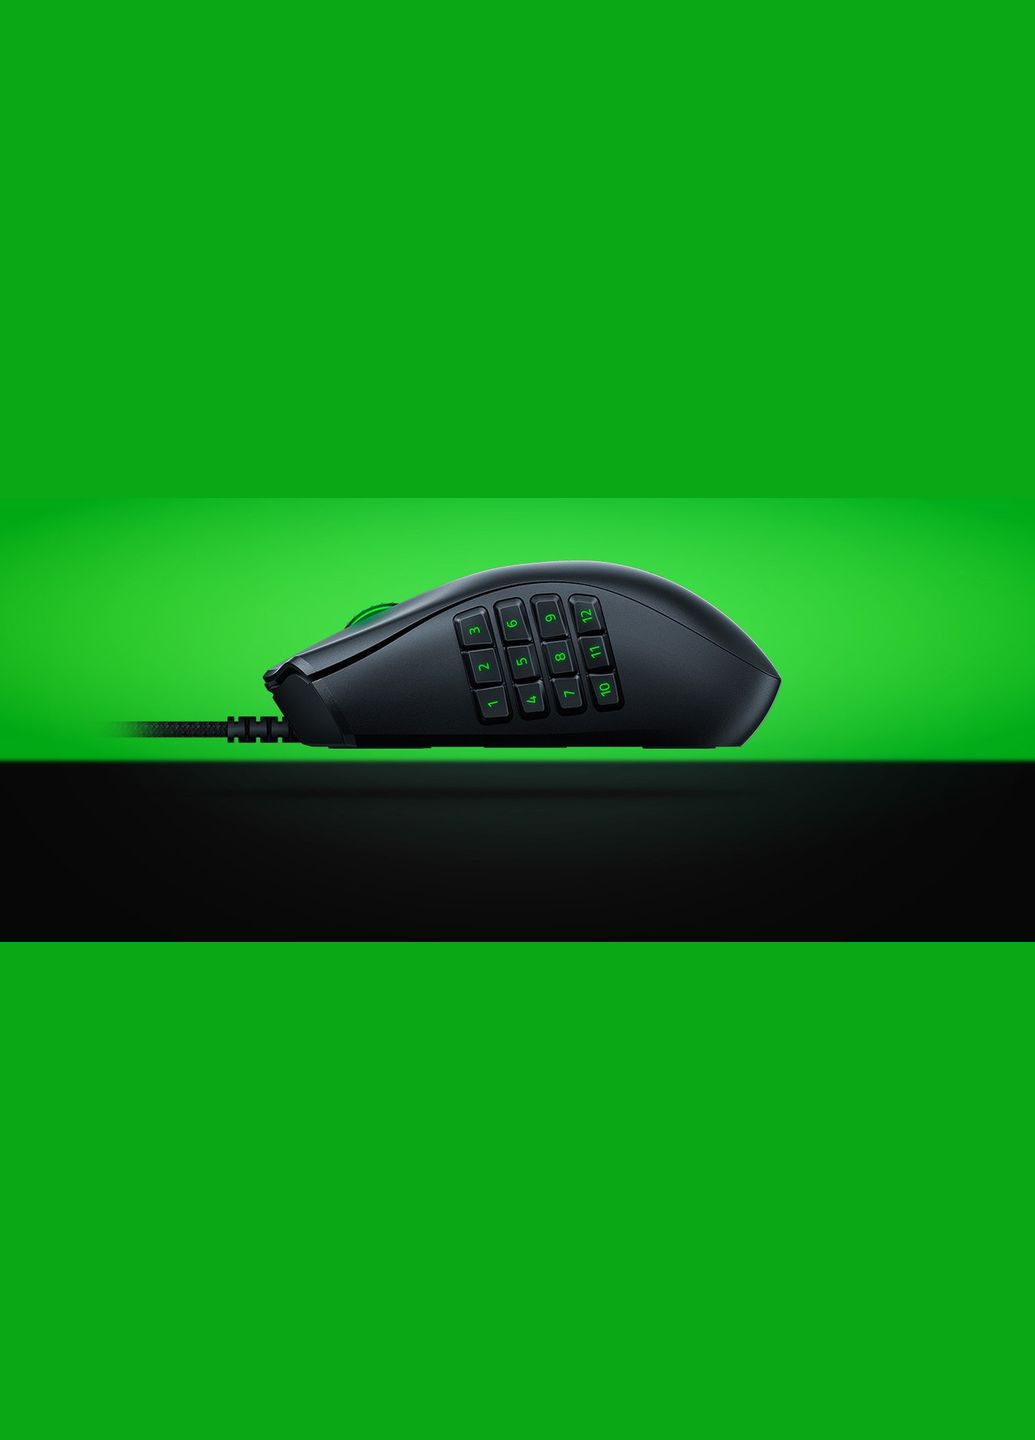 Миша з цифровою клавіатурою Razer Naga X (RZ0103590100-R3M1) чорна Razor (279555010)